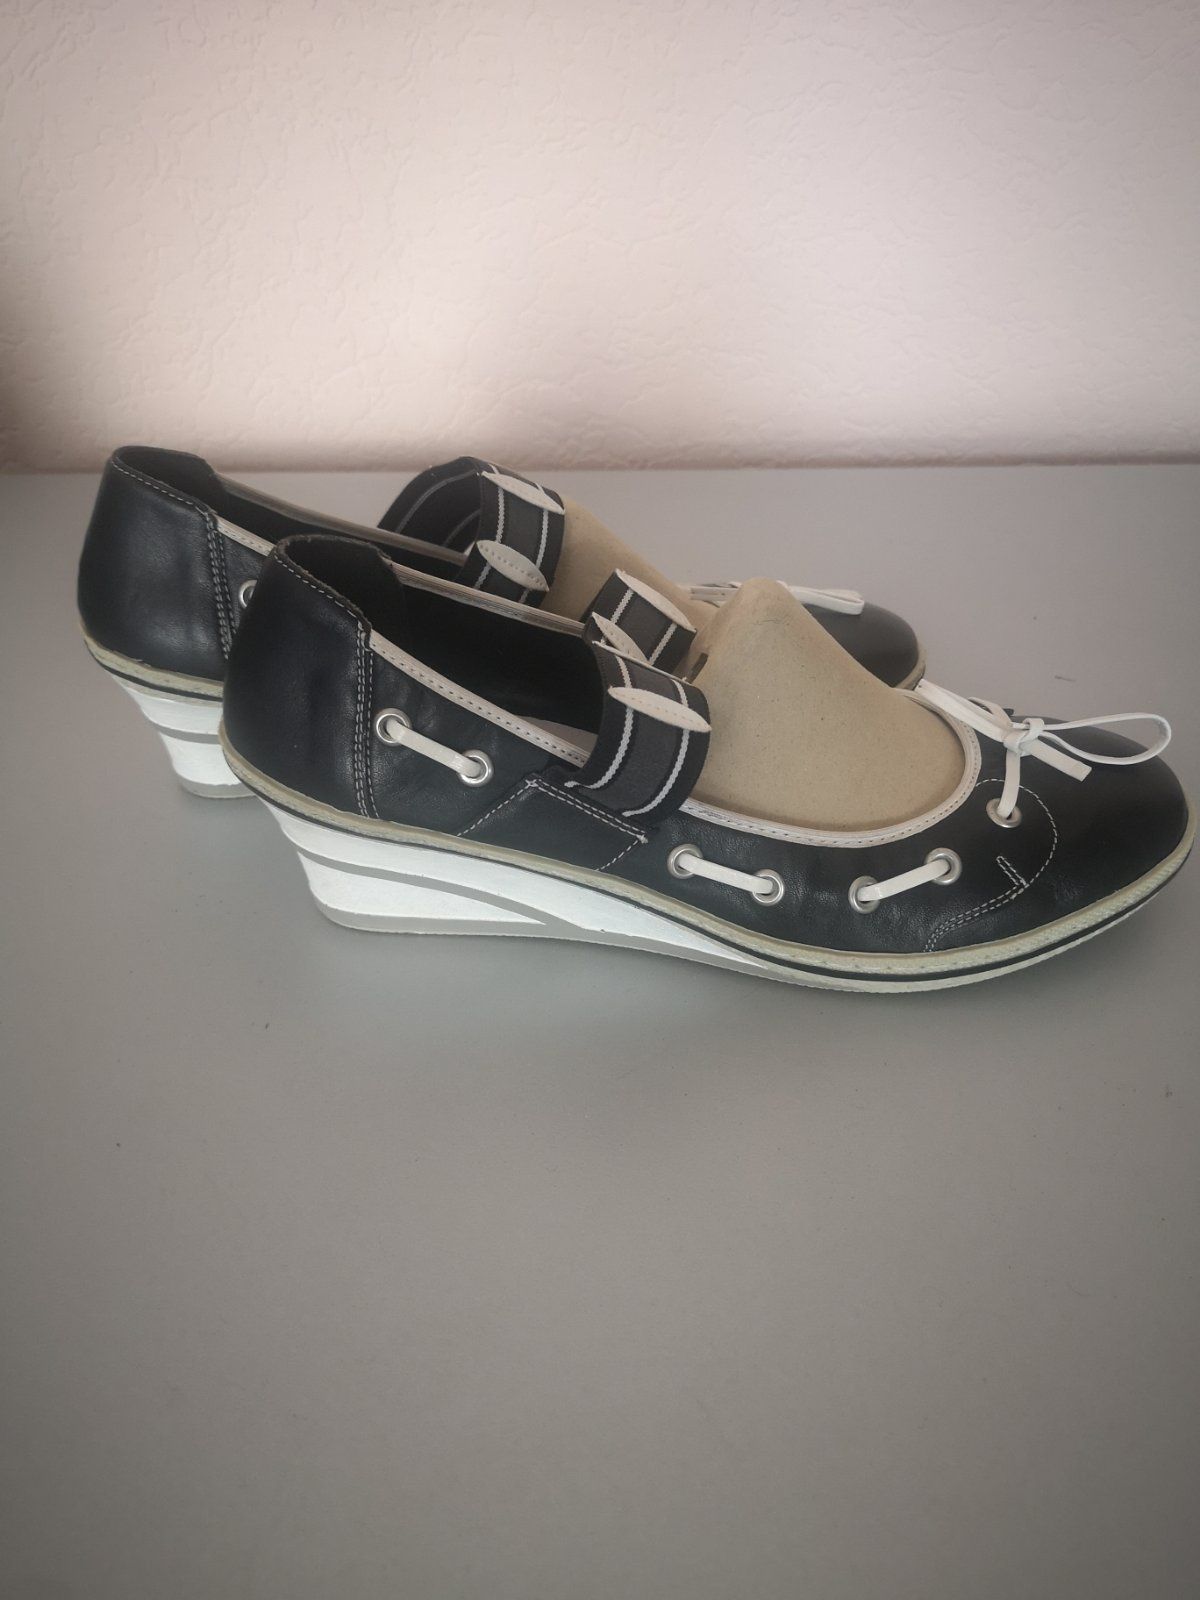 Черевики туфлі жіночі виробництва Німеччини фірми Rieker, 42